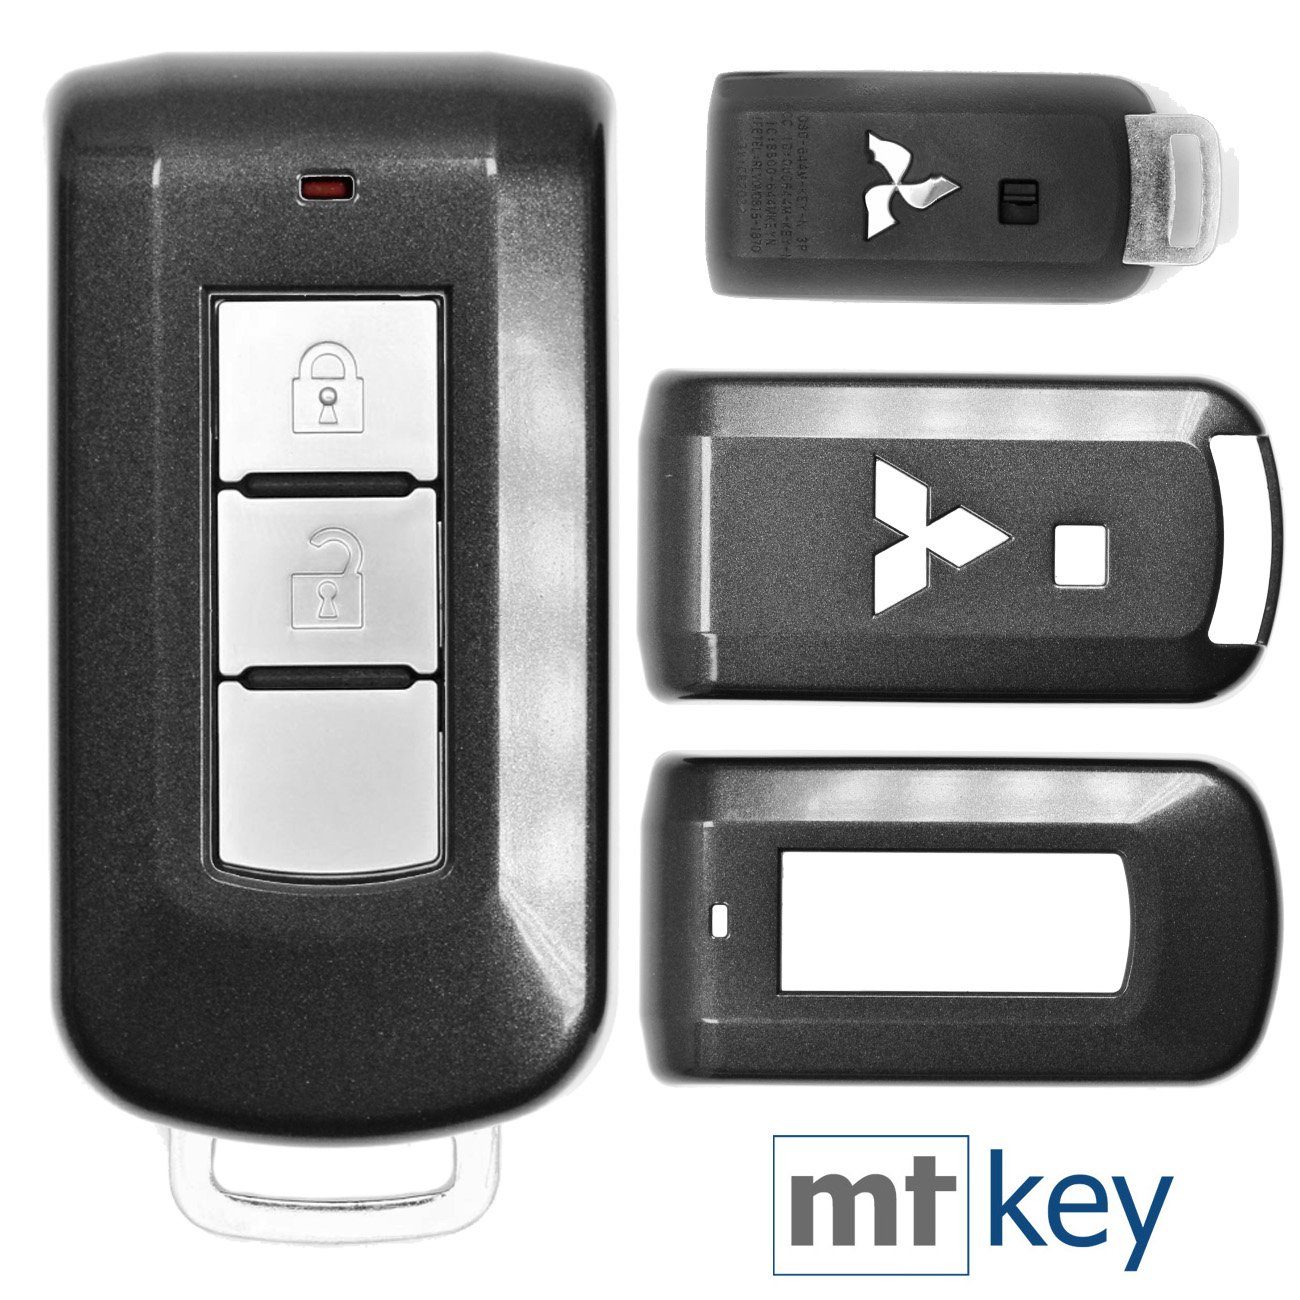 mt-key Schlüsseltasche Autoschlüssel Hardcover Schutzhülle Metallic Grau, für Mitsubishi ASX L200 Outlander Pajero KEYLESS SMARTKEY